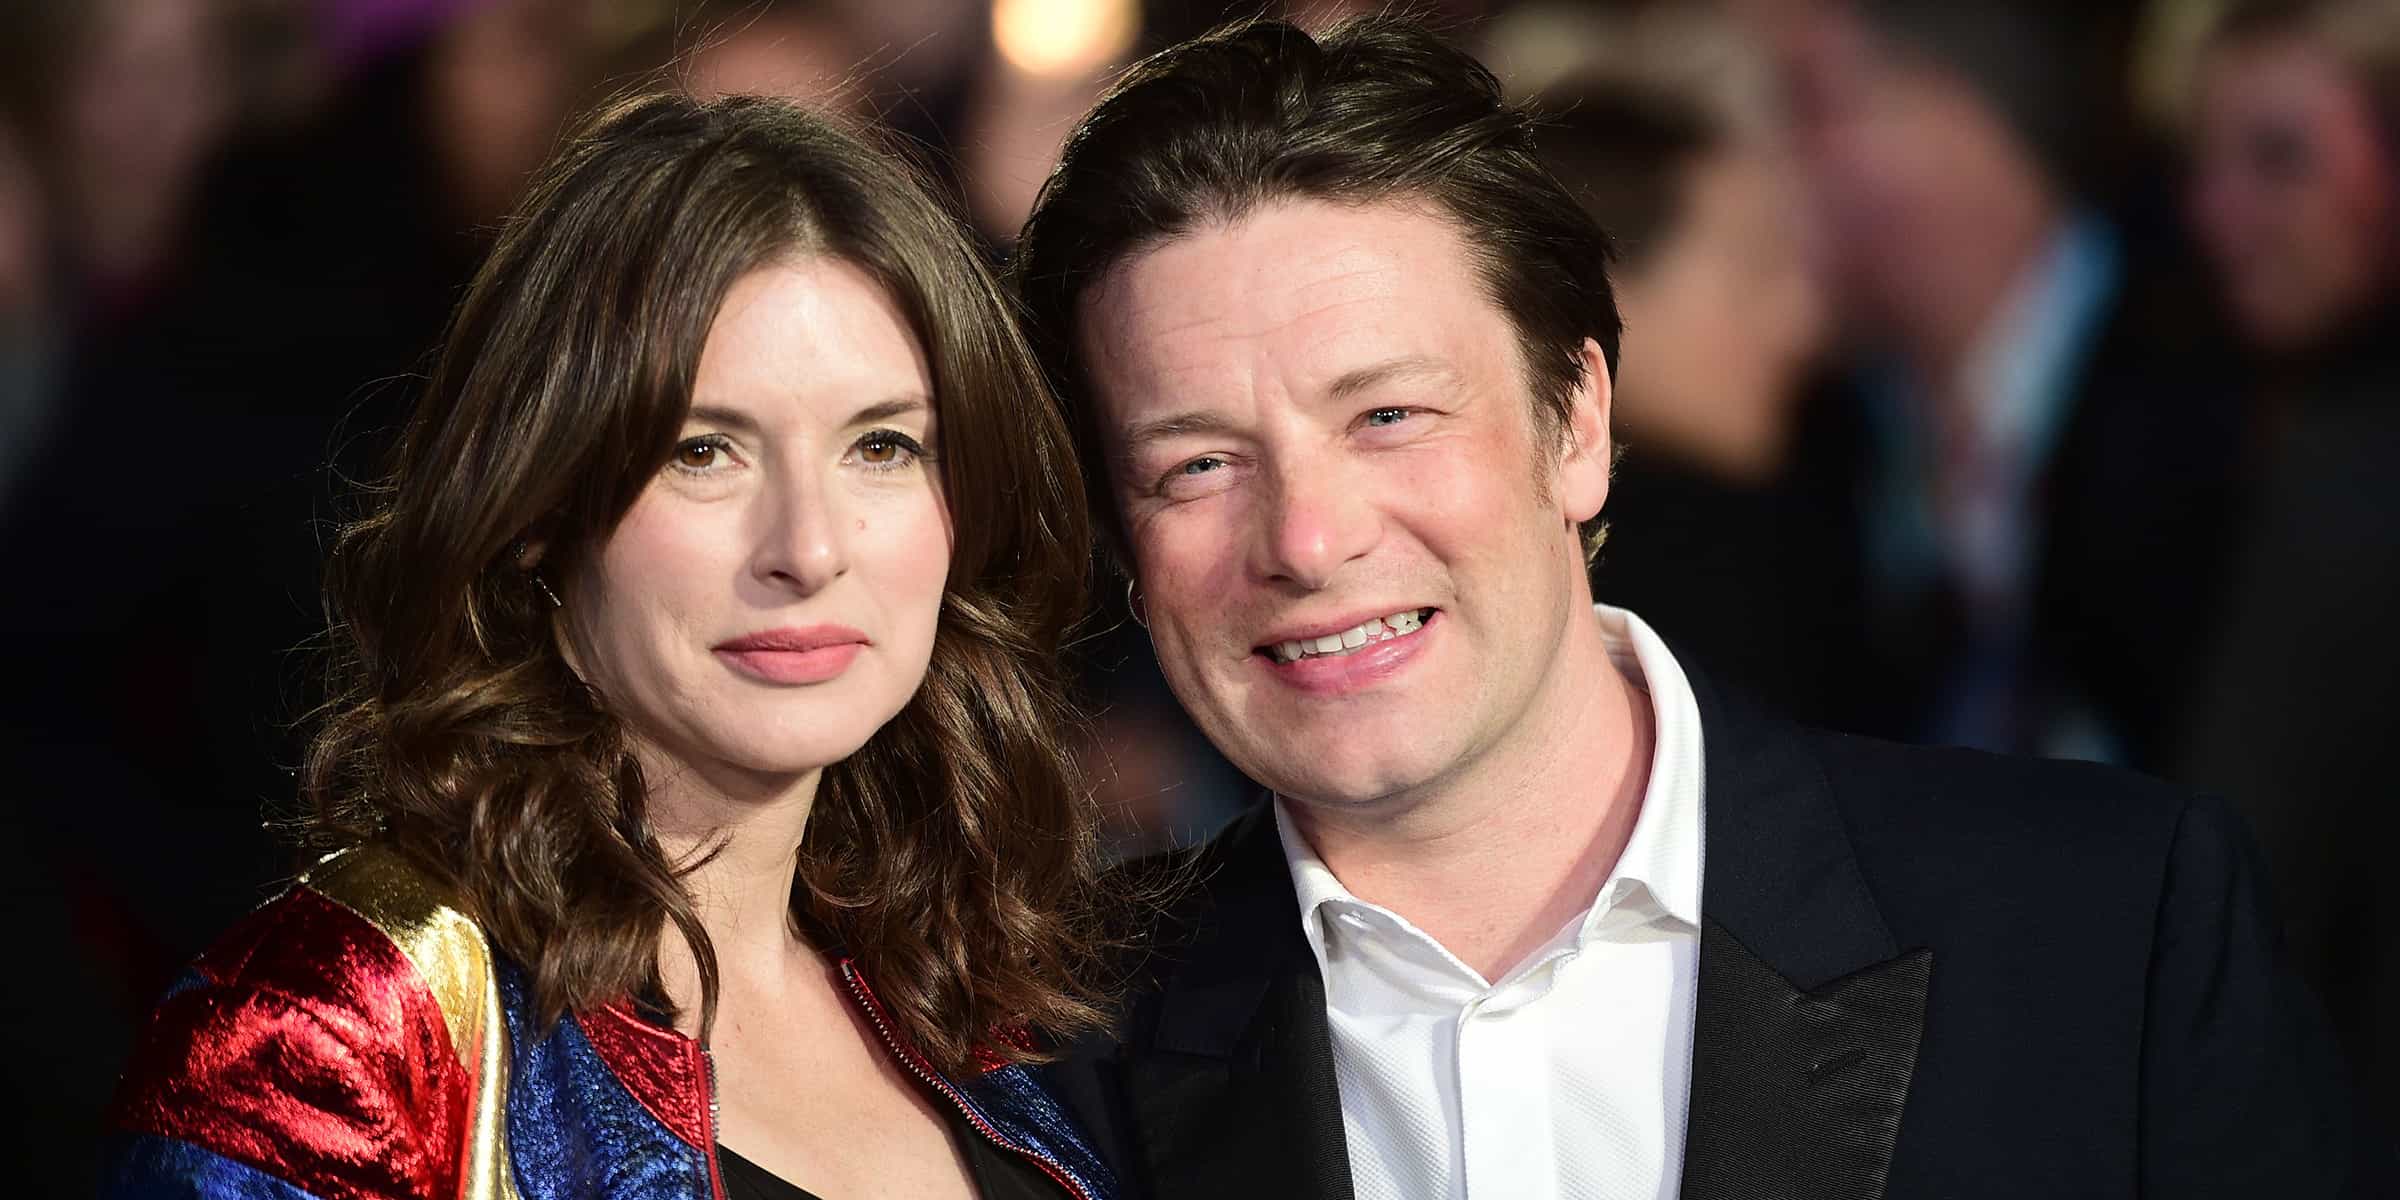 Chef britânico Jamie Oliver (R) e sua esposa Juliette (Créditos: Getty Images)